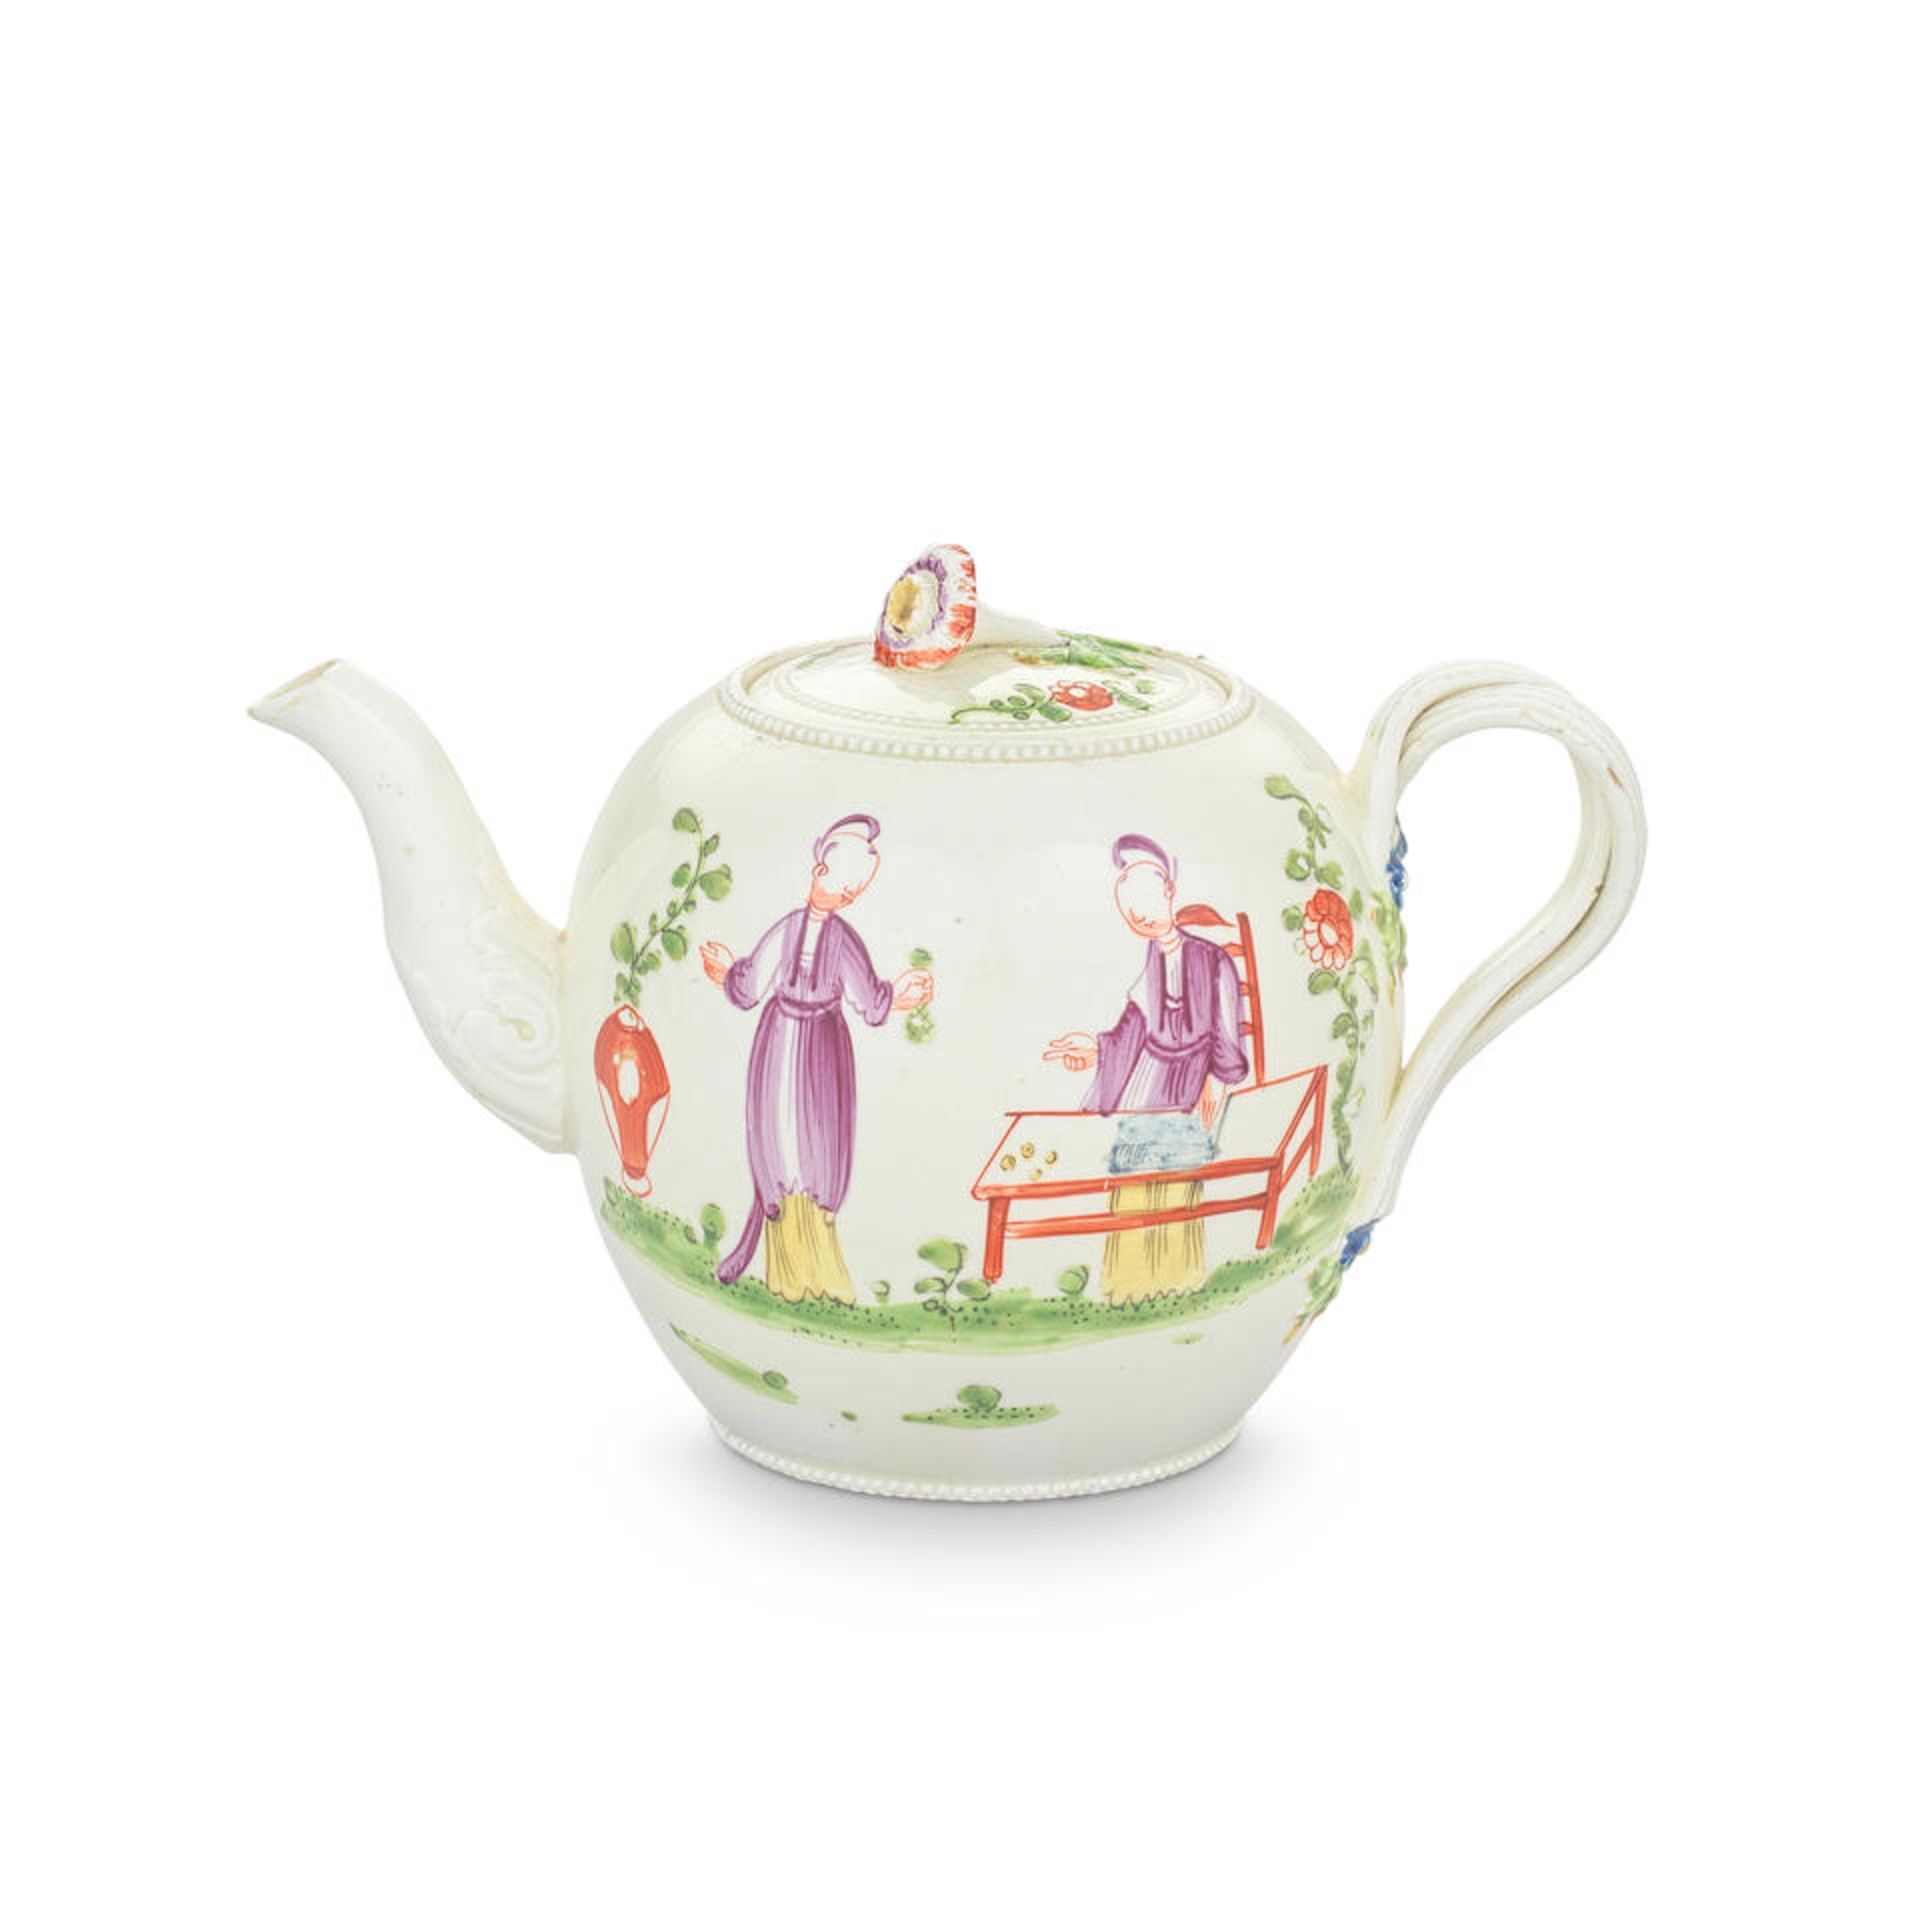 A small creamware teapot and cover, circa 1775